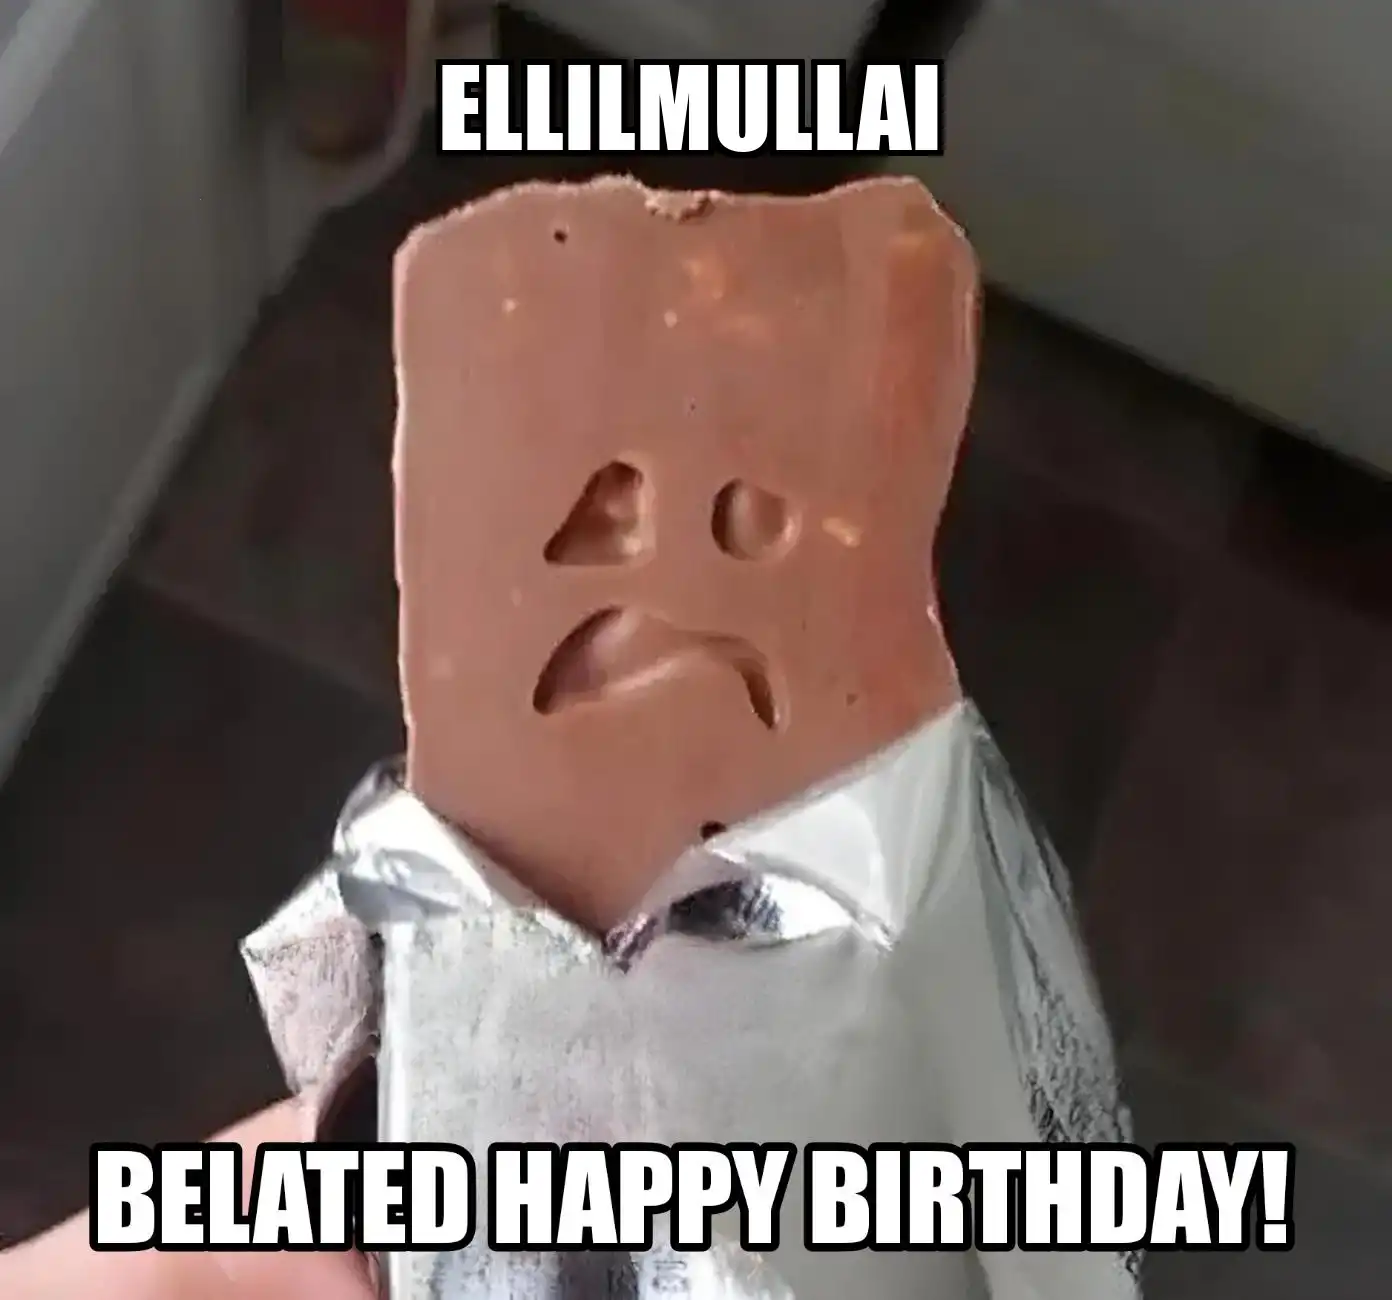 Happy Birthday Ellilmullai Belated Happy Birthday Meme